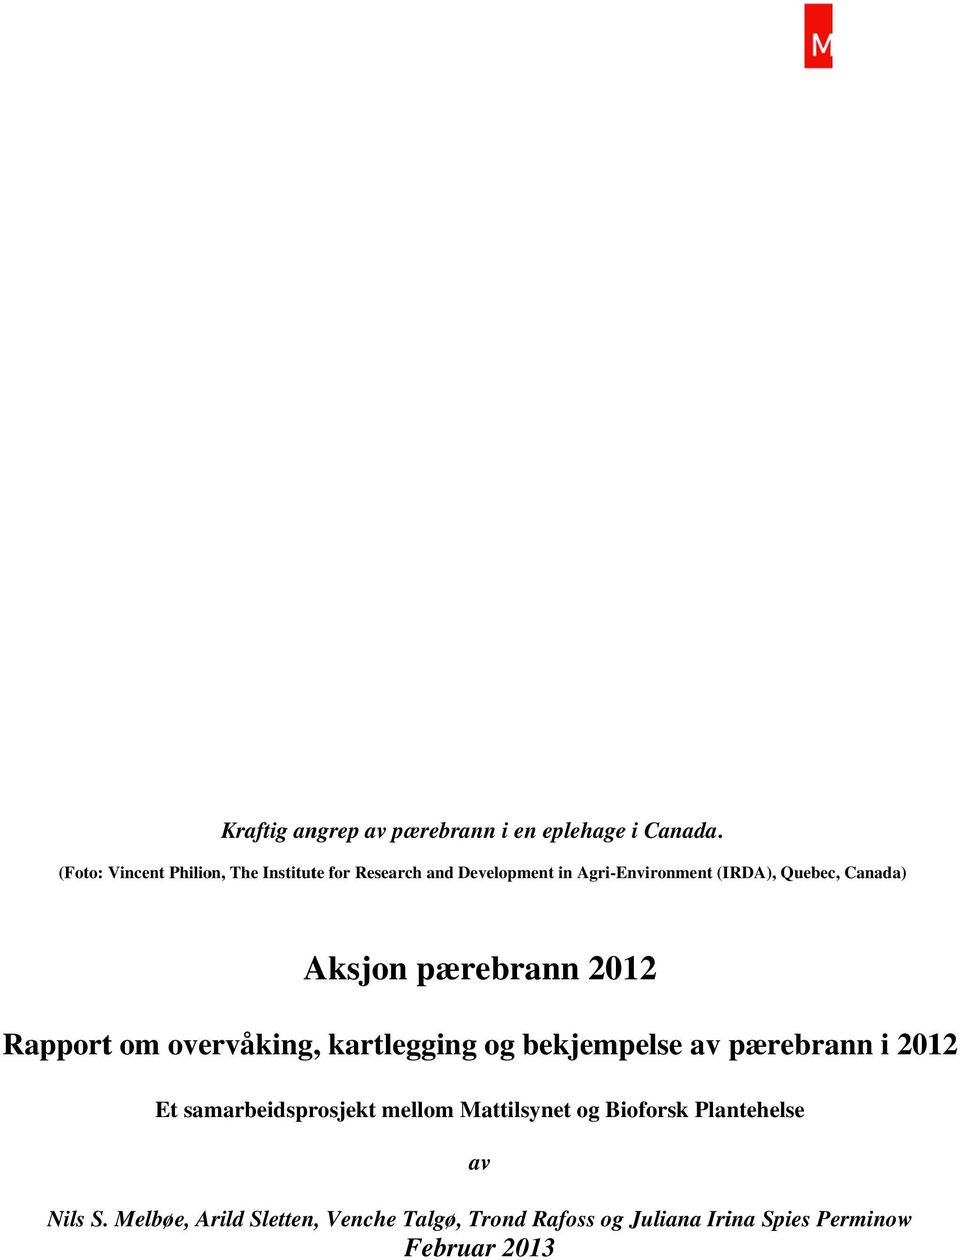 Canada) Aksjon pærebrann 2012 Rapport om overvåking, kartlegging og bekjempelse av pærebrann i 2012 Et